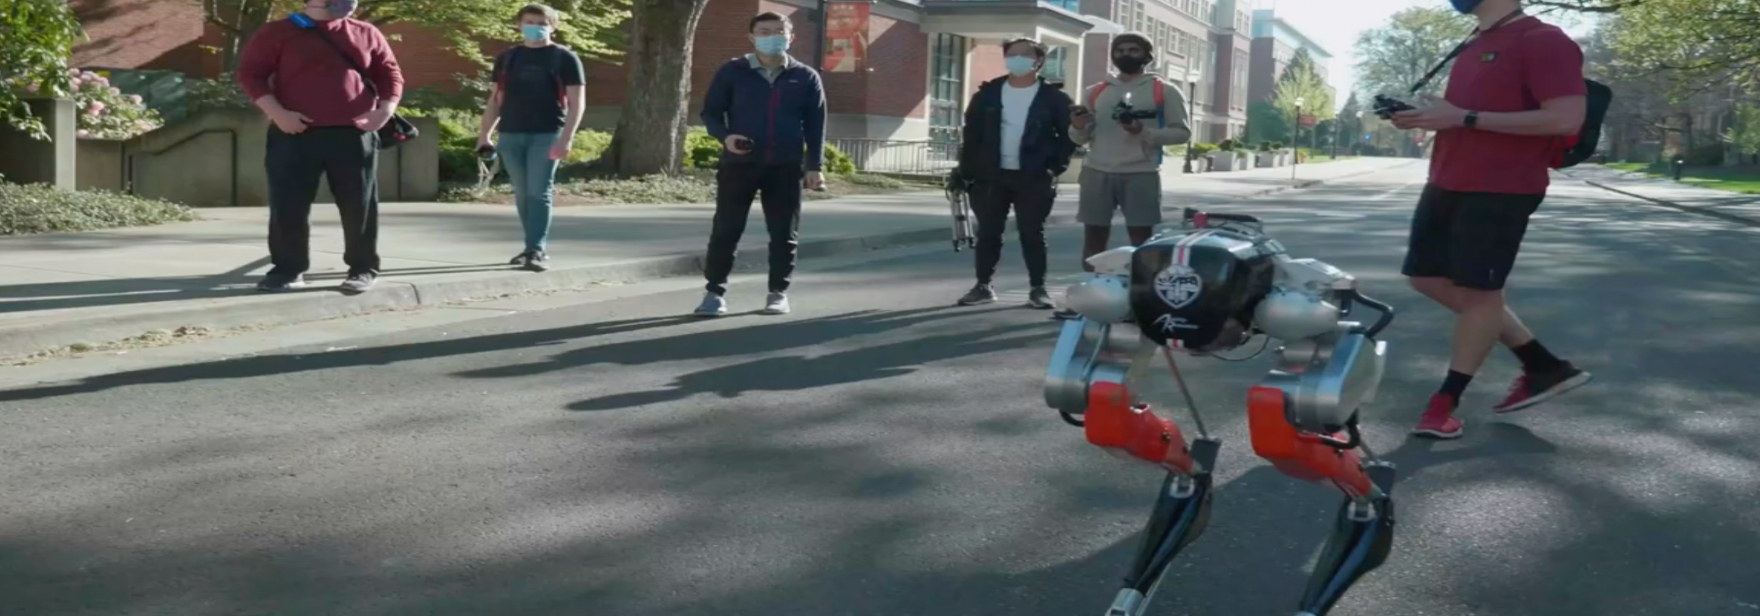 Двуногий робот впервые пробежал 5 км меньше чем за час — с такой скоростью ходит человек. Вот видео